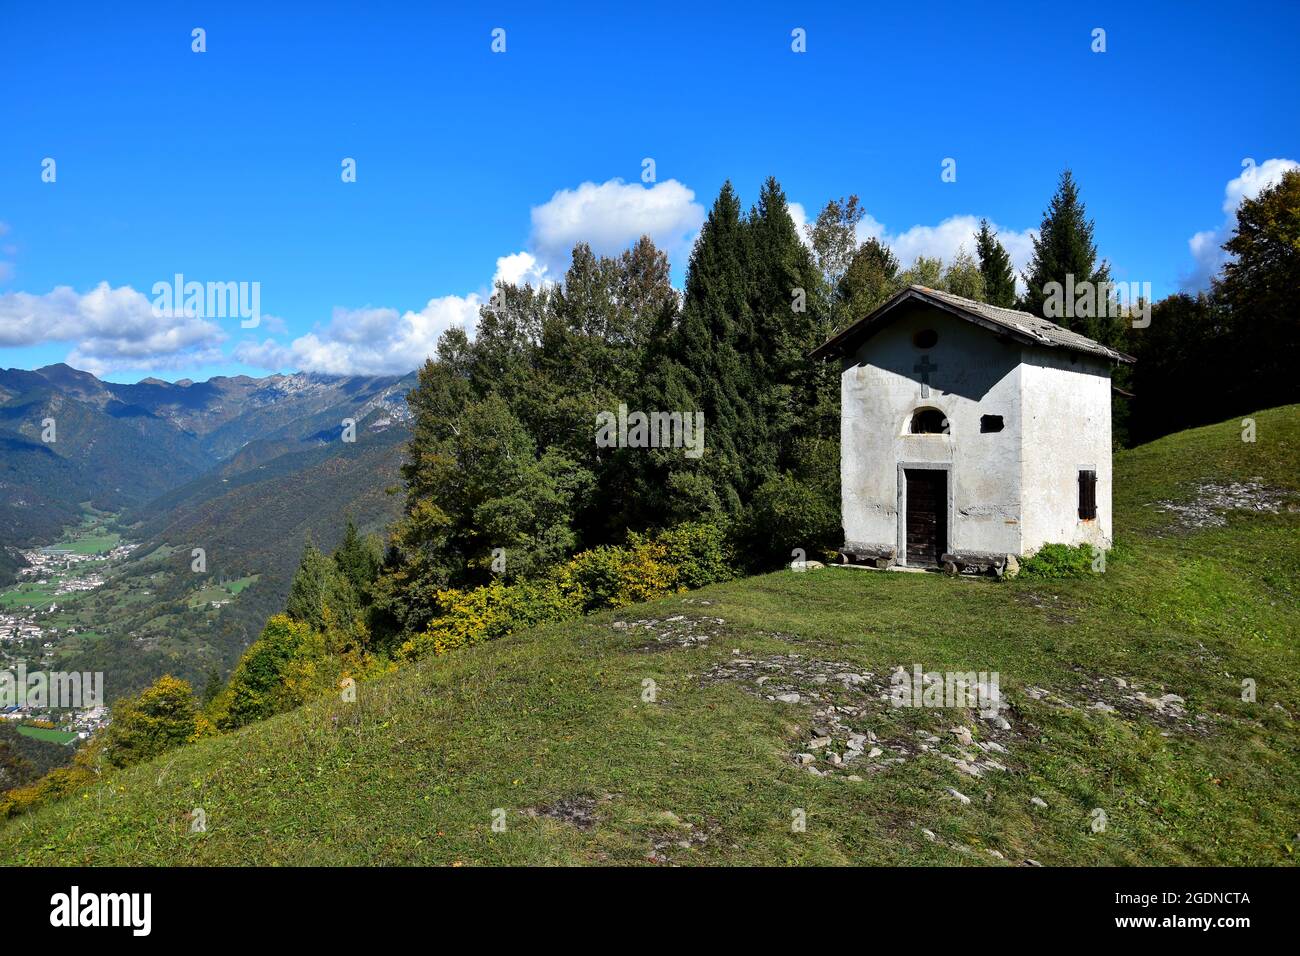 La petite chapelle de San Martino sur le mont Corno lors d'une belle journée d'automne claire. Sur la gauche quelques petites villes dans une vallée. Trentin, Italie. Banque D'Images